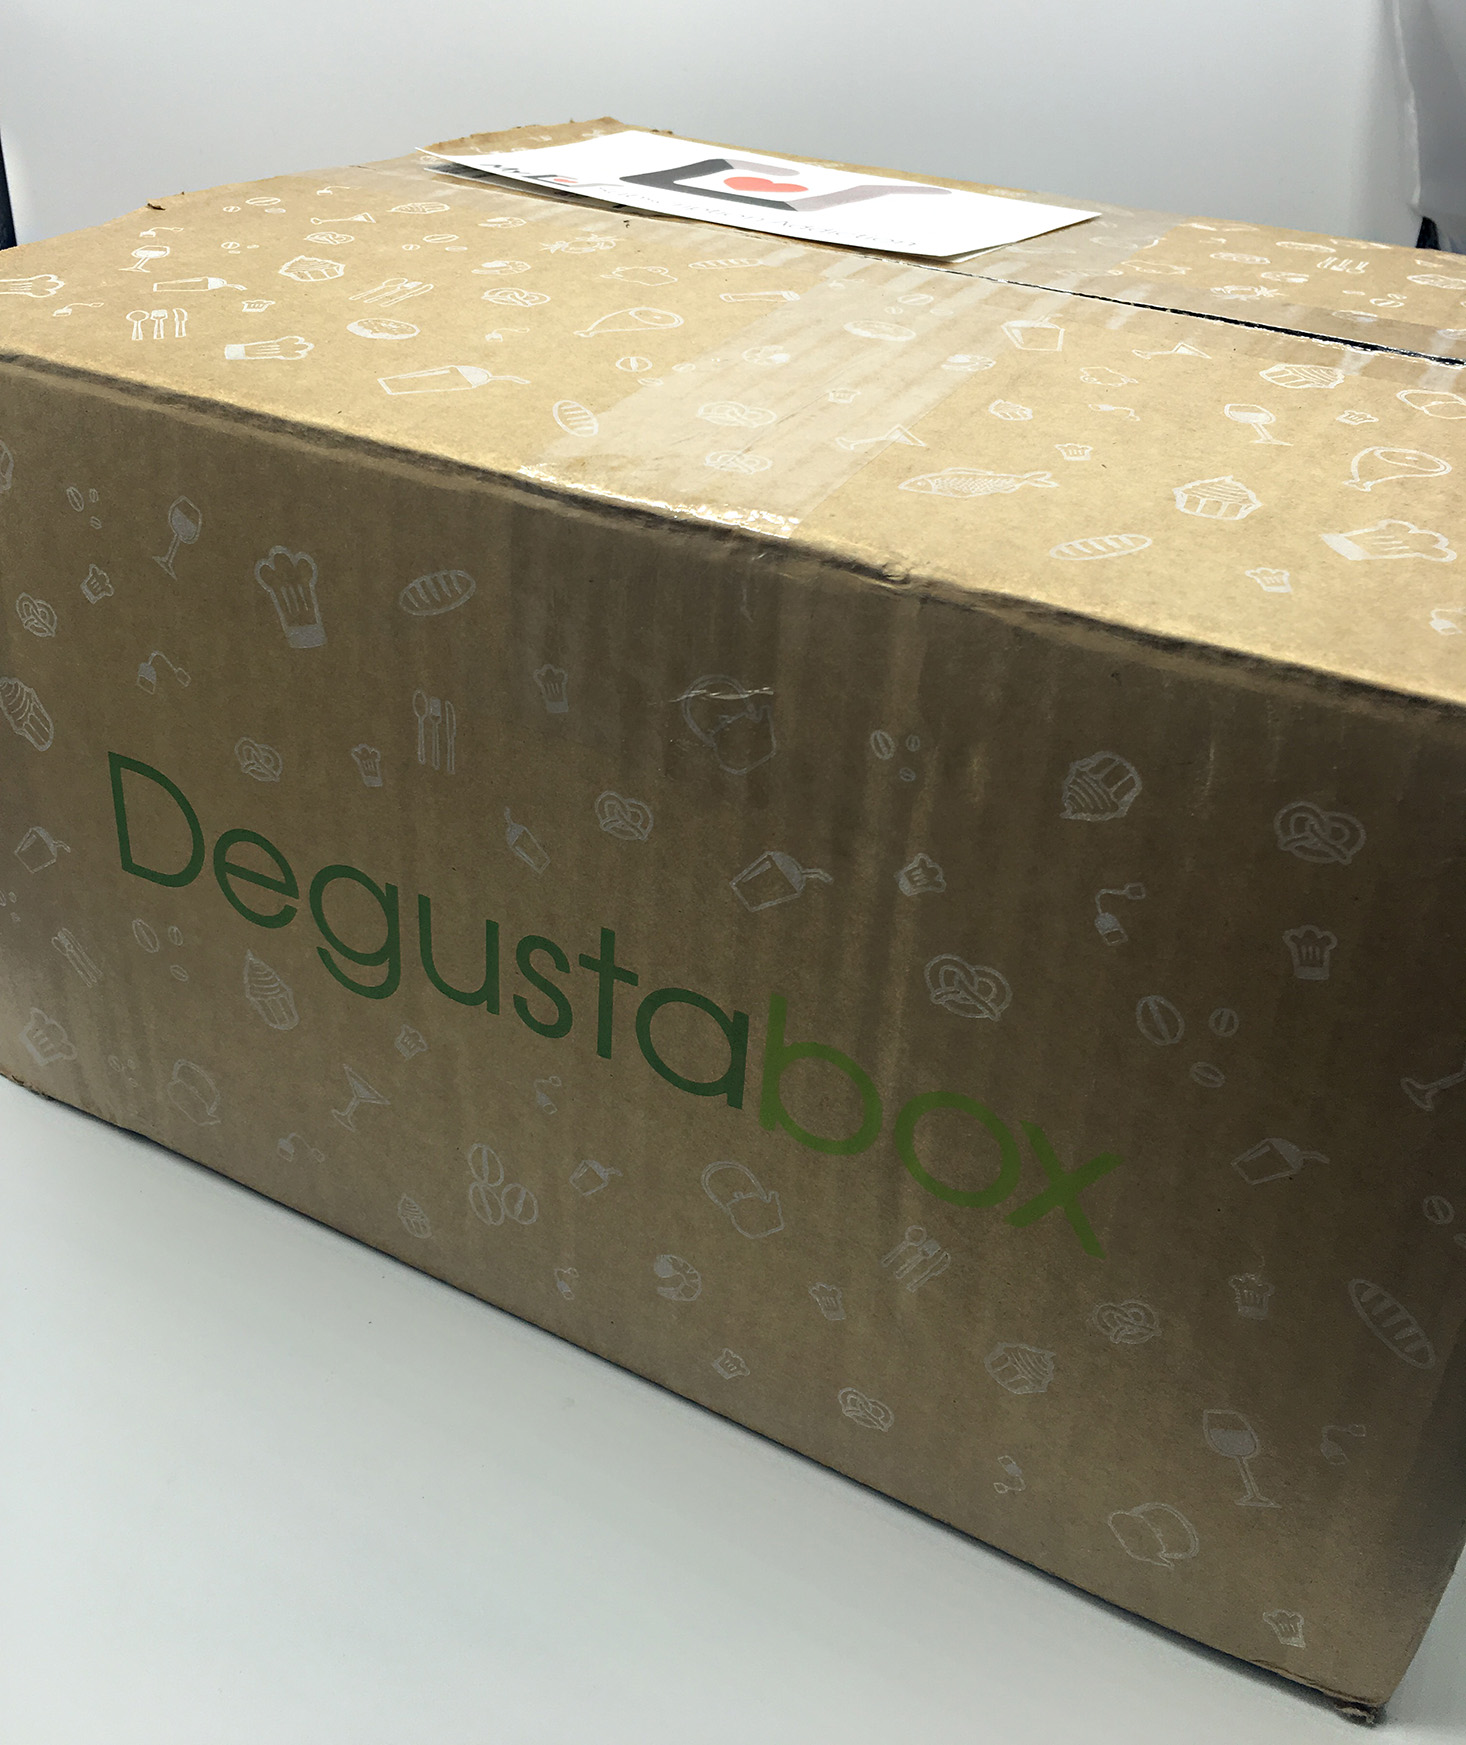 degustabox-september-2016-box